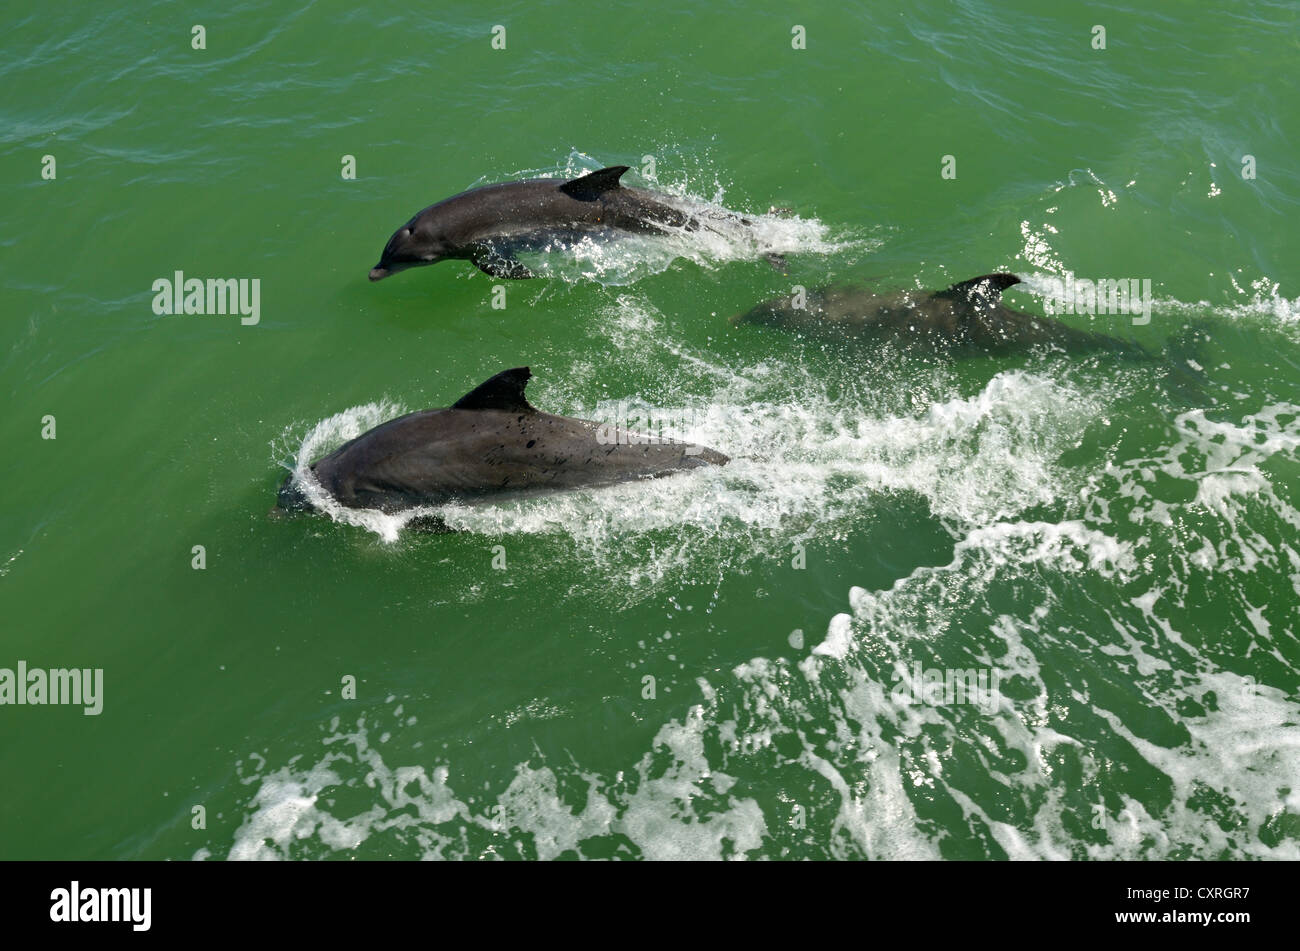 Les dauphins vue pendant un voyage en bateau au large de l'île de Sanibel, Captiva Island, Floride, USA Banque D'Images